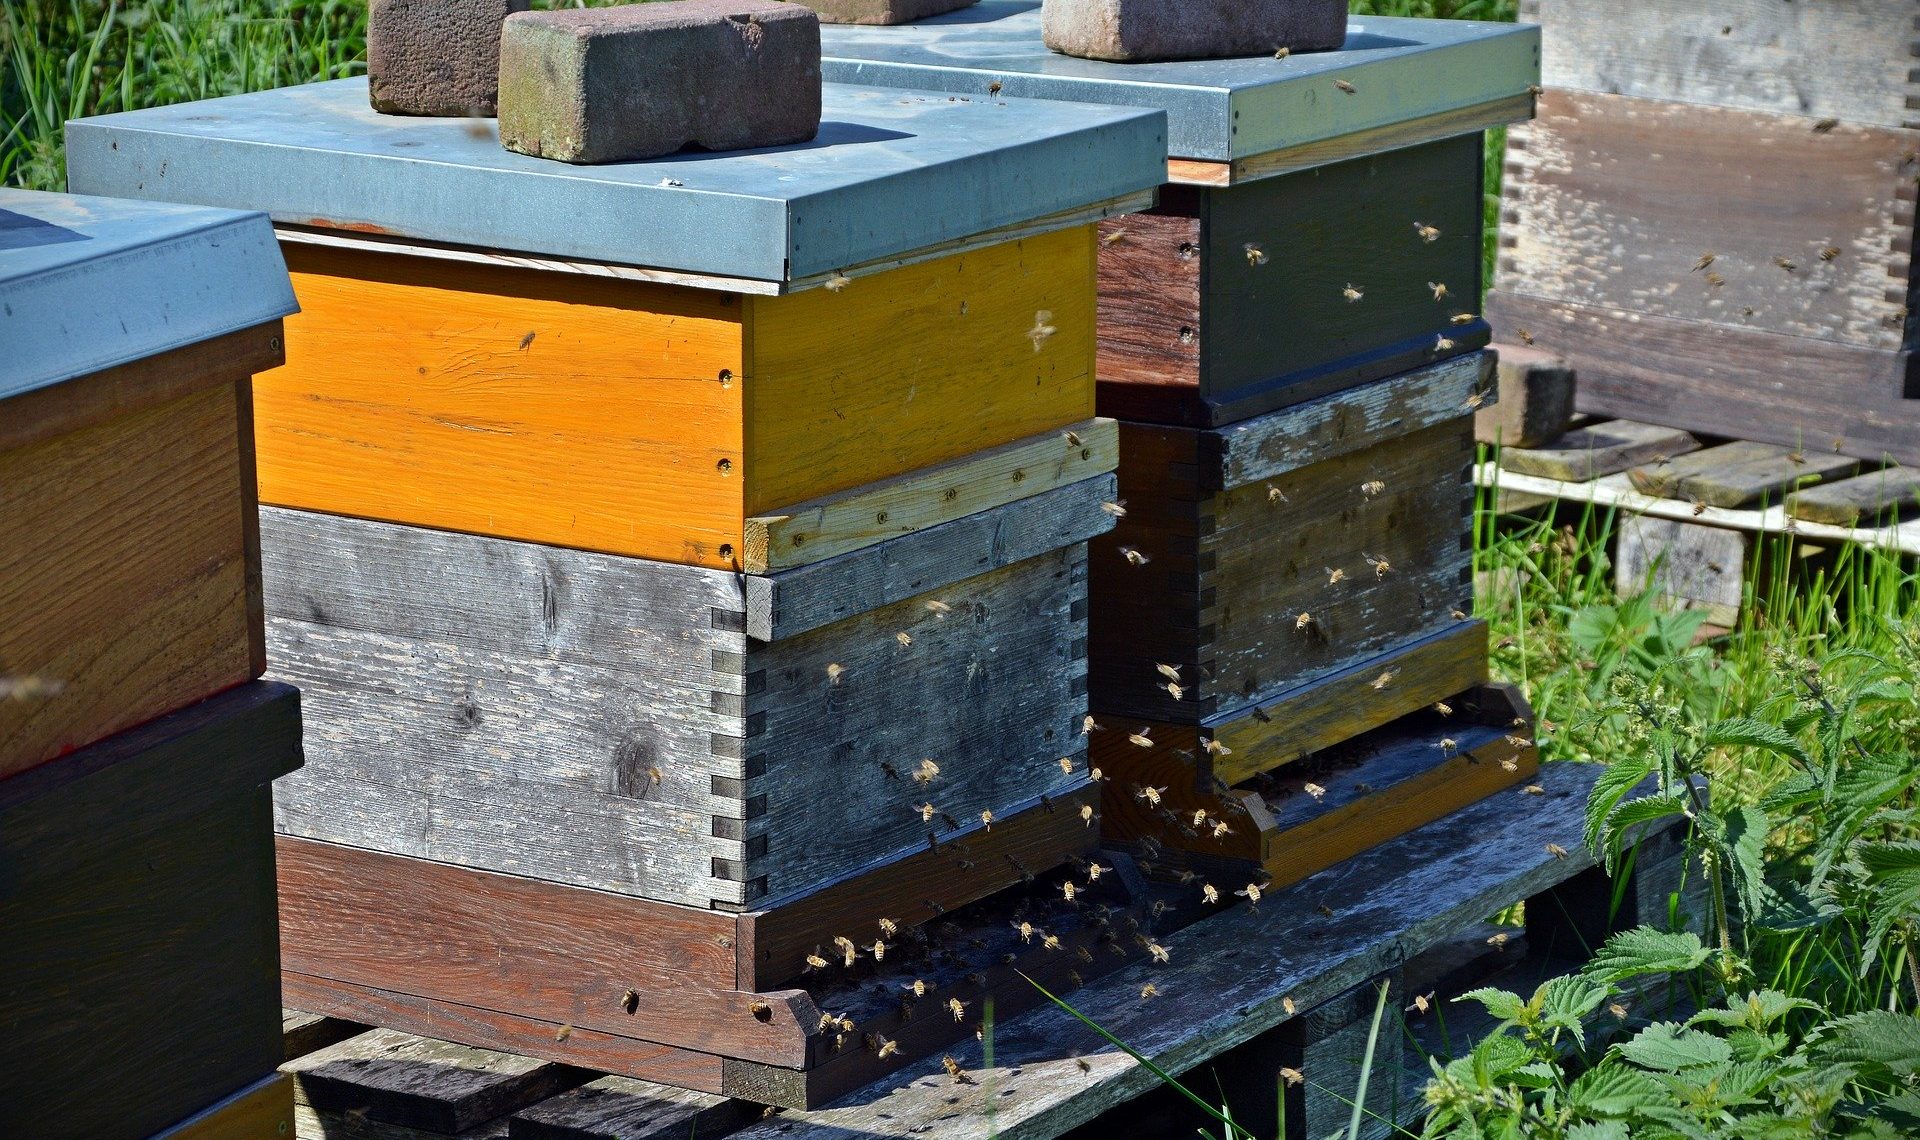 La protection des abeilles en consultation publique